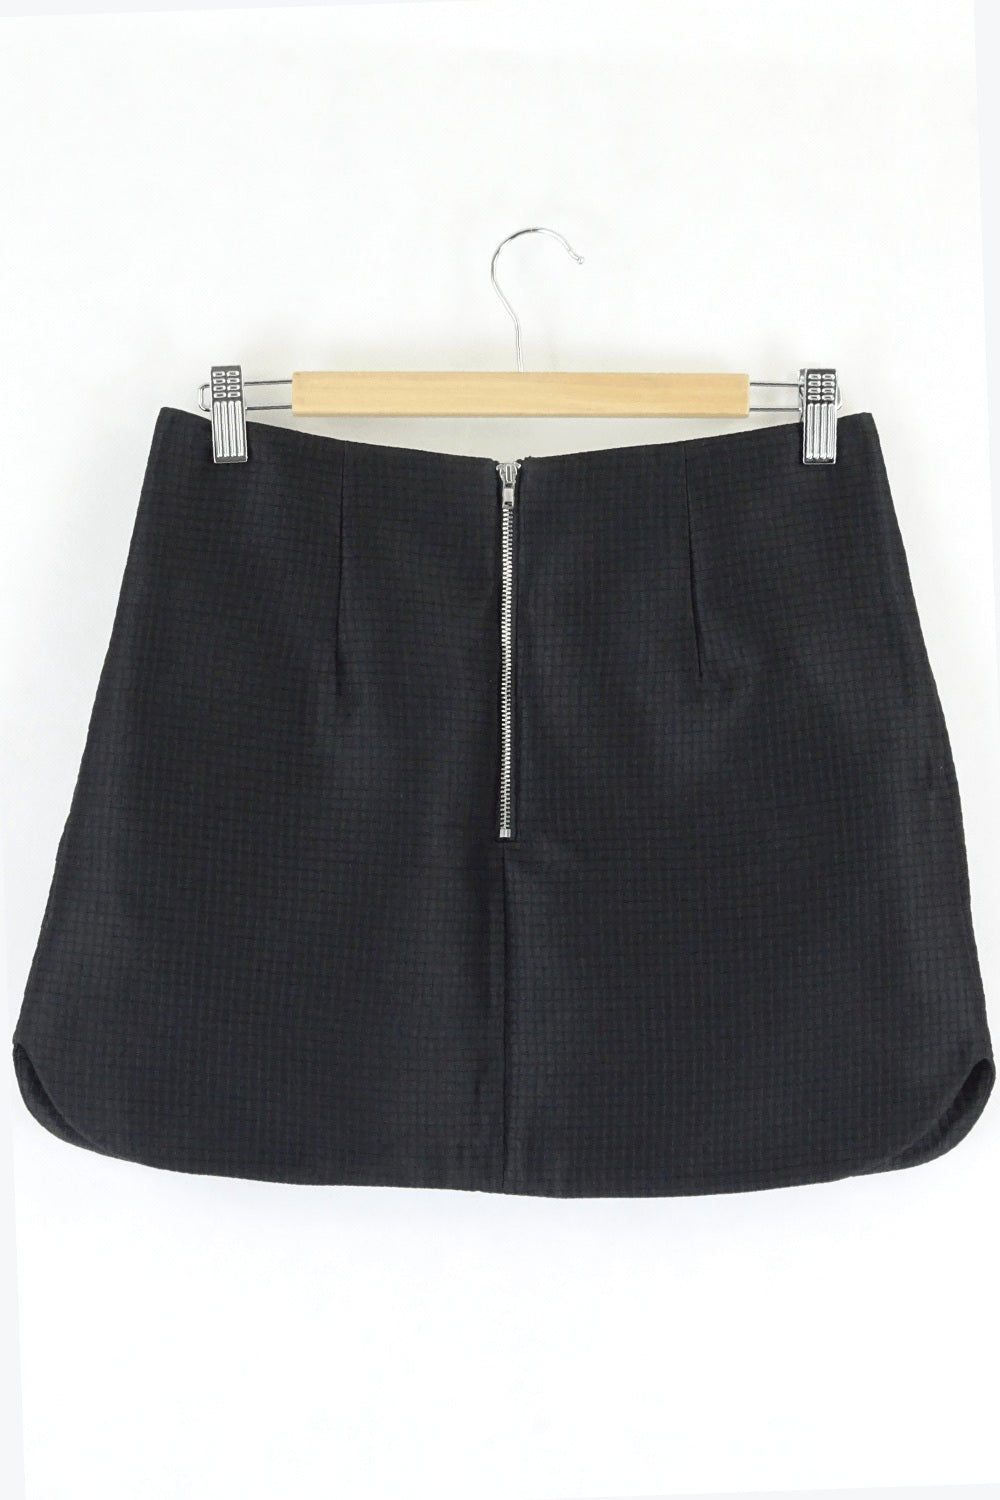 Lulu &amp; Rose Textured Black Mini Skirt S